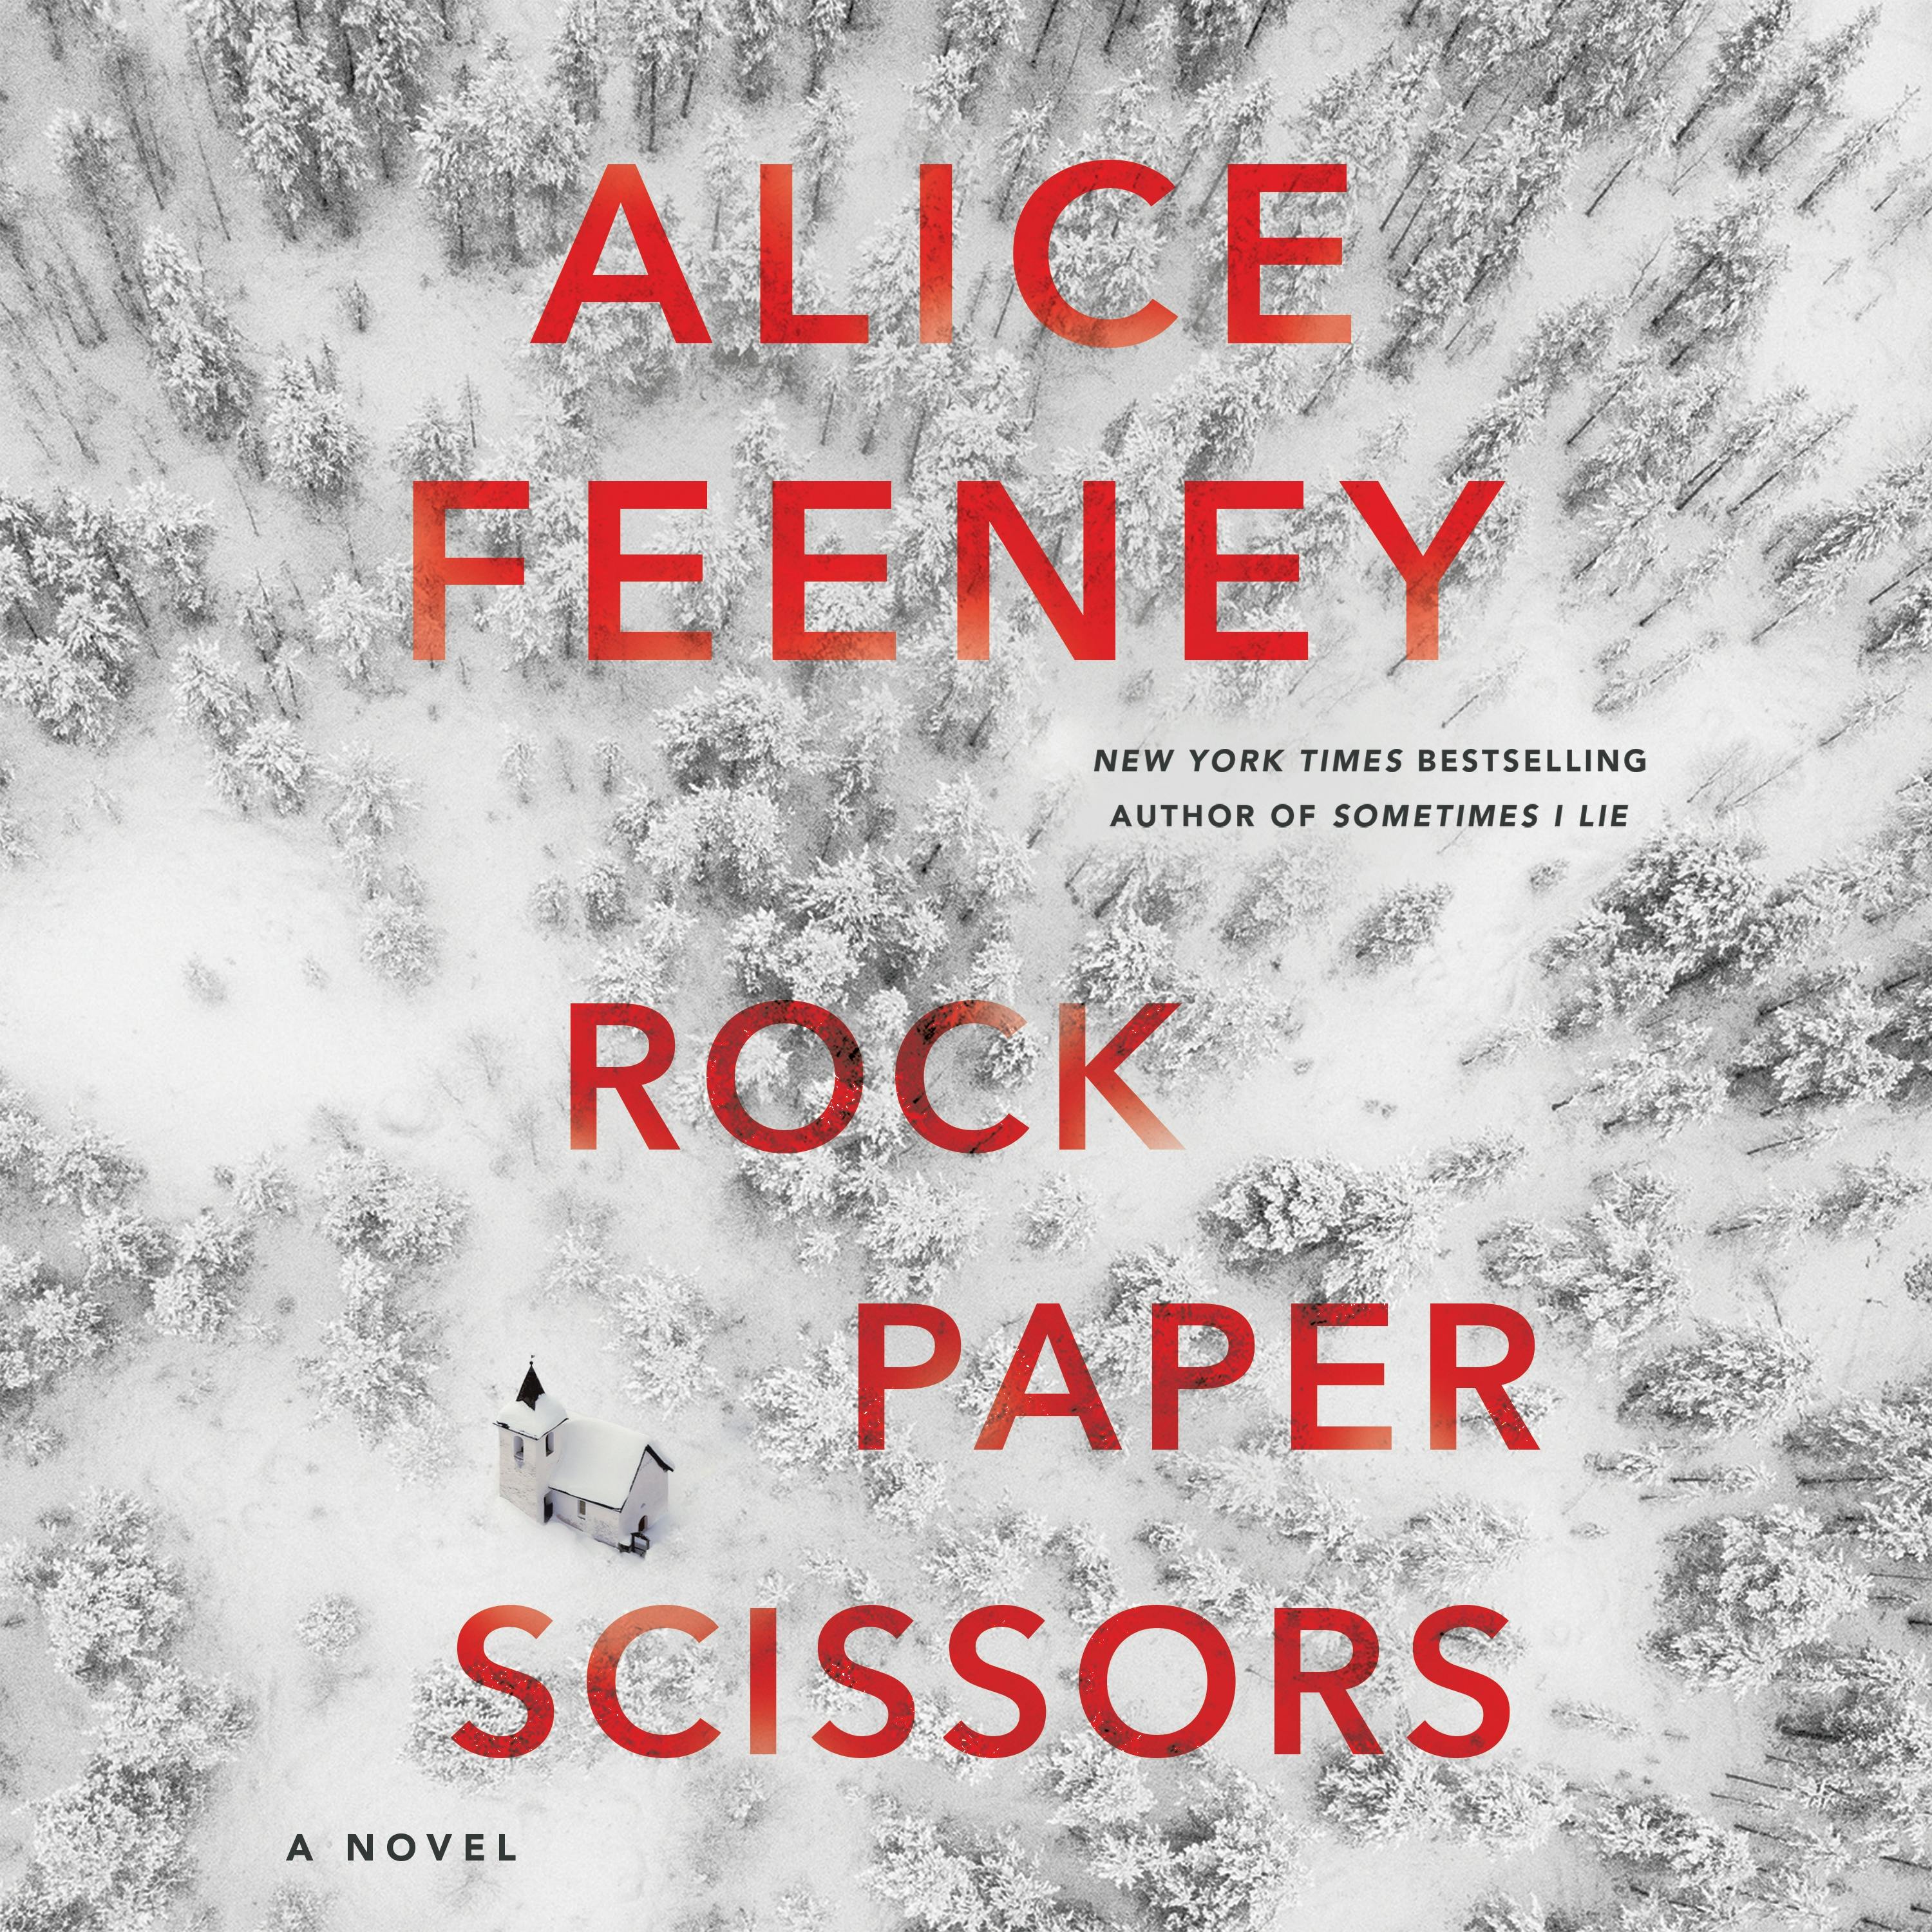 Rock Paper Scissors - by Alice Feeney (Hardcover)